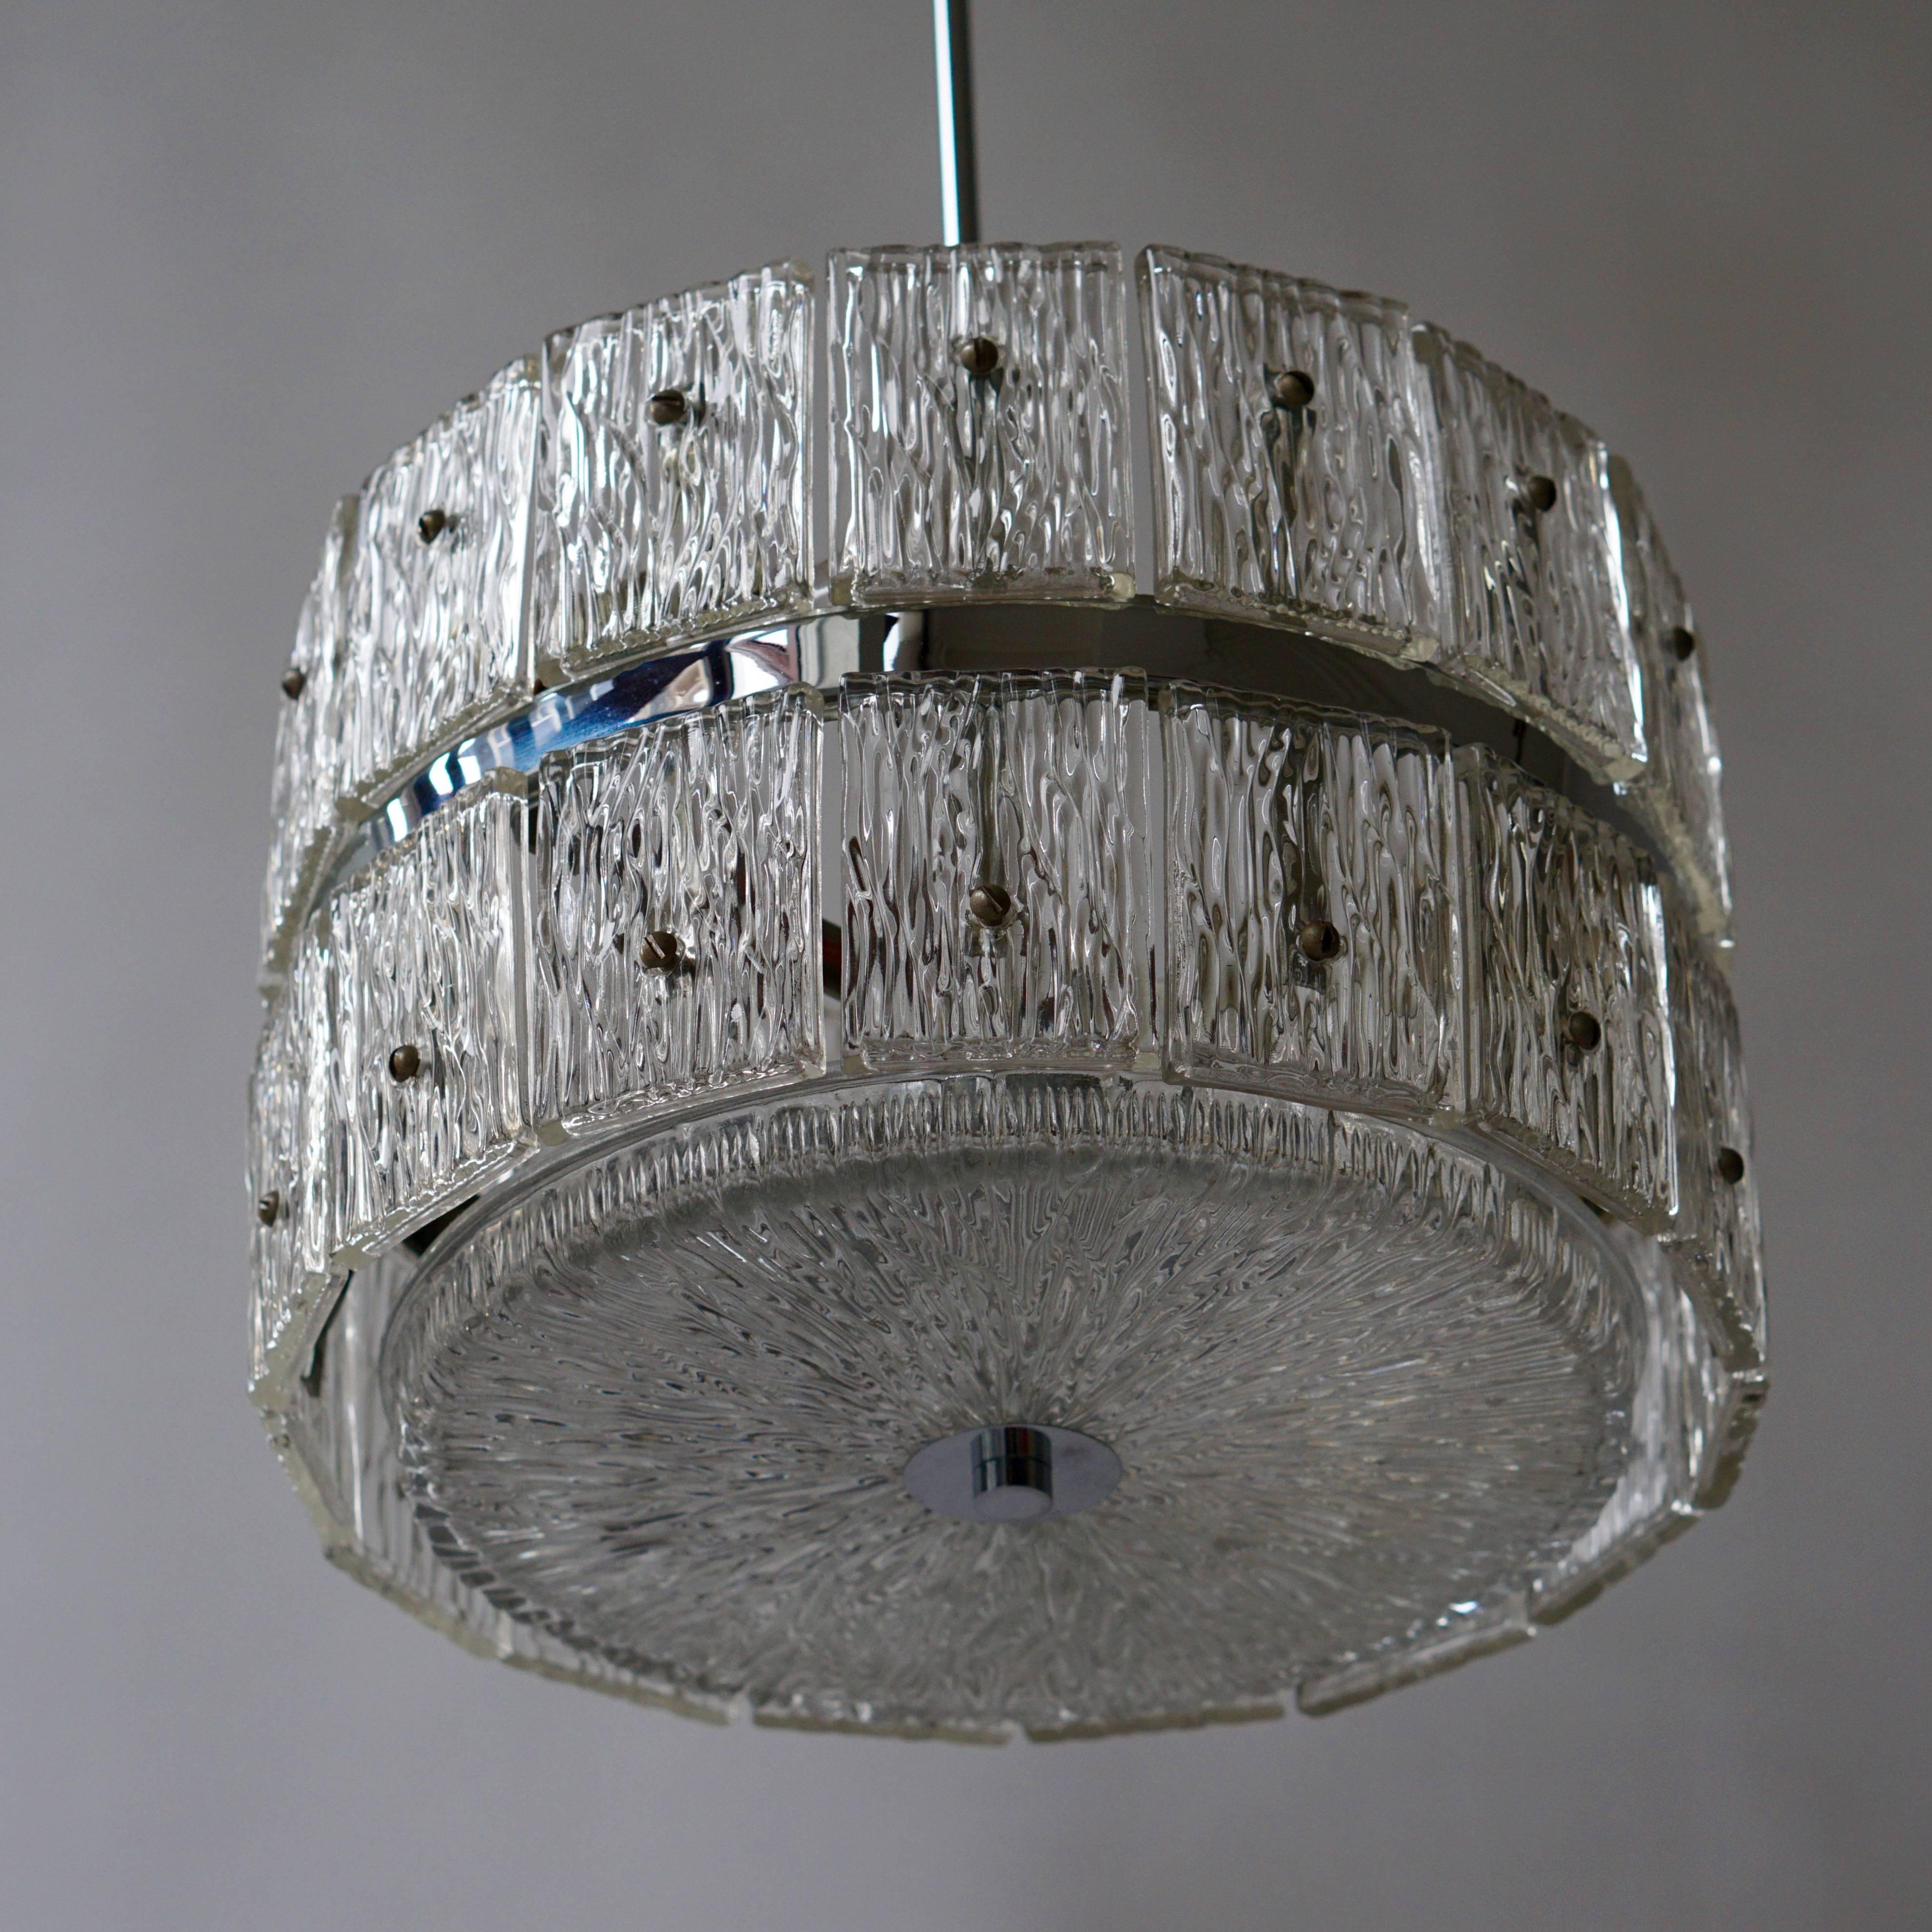 Italian Murano glass pendant light.
Measures: Diameter 37 cm.
Height 23 cm.
Total height 90 cm.